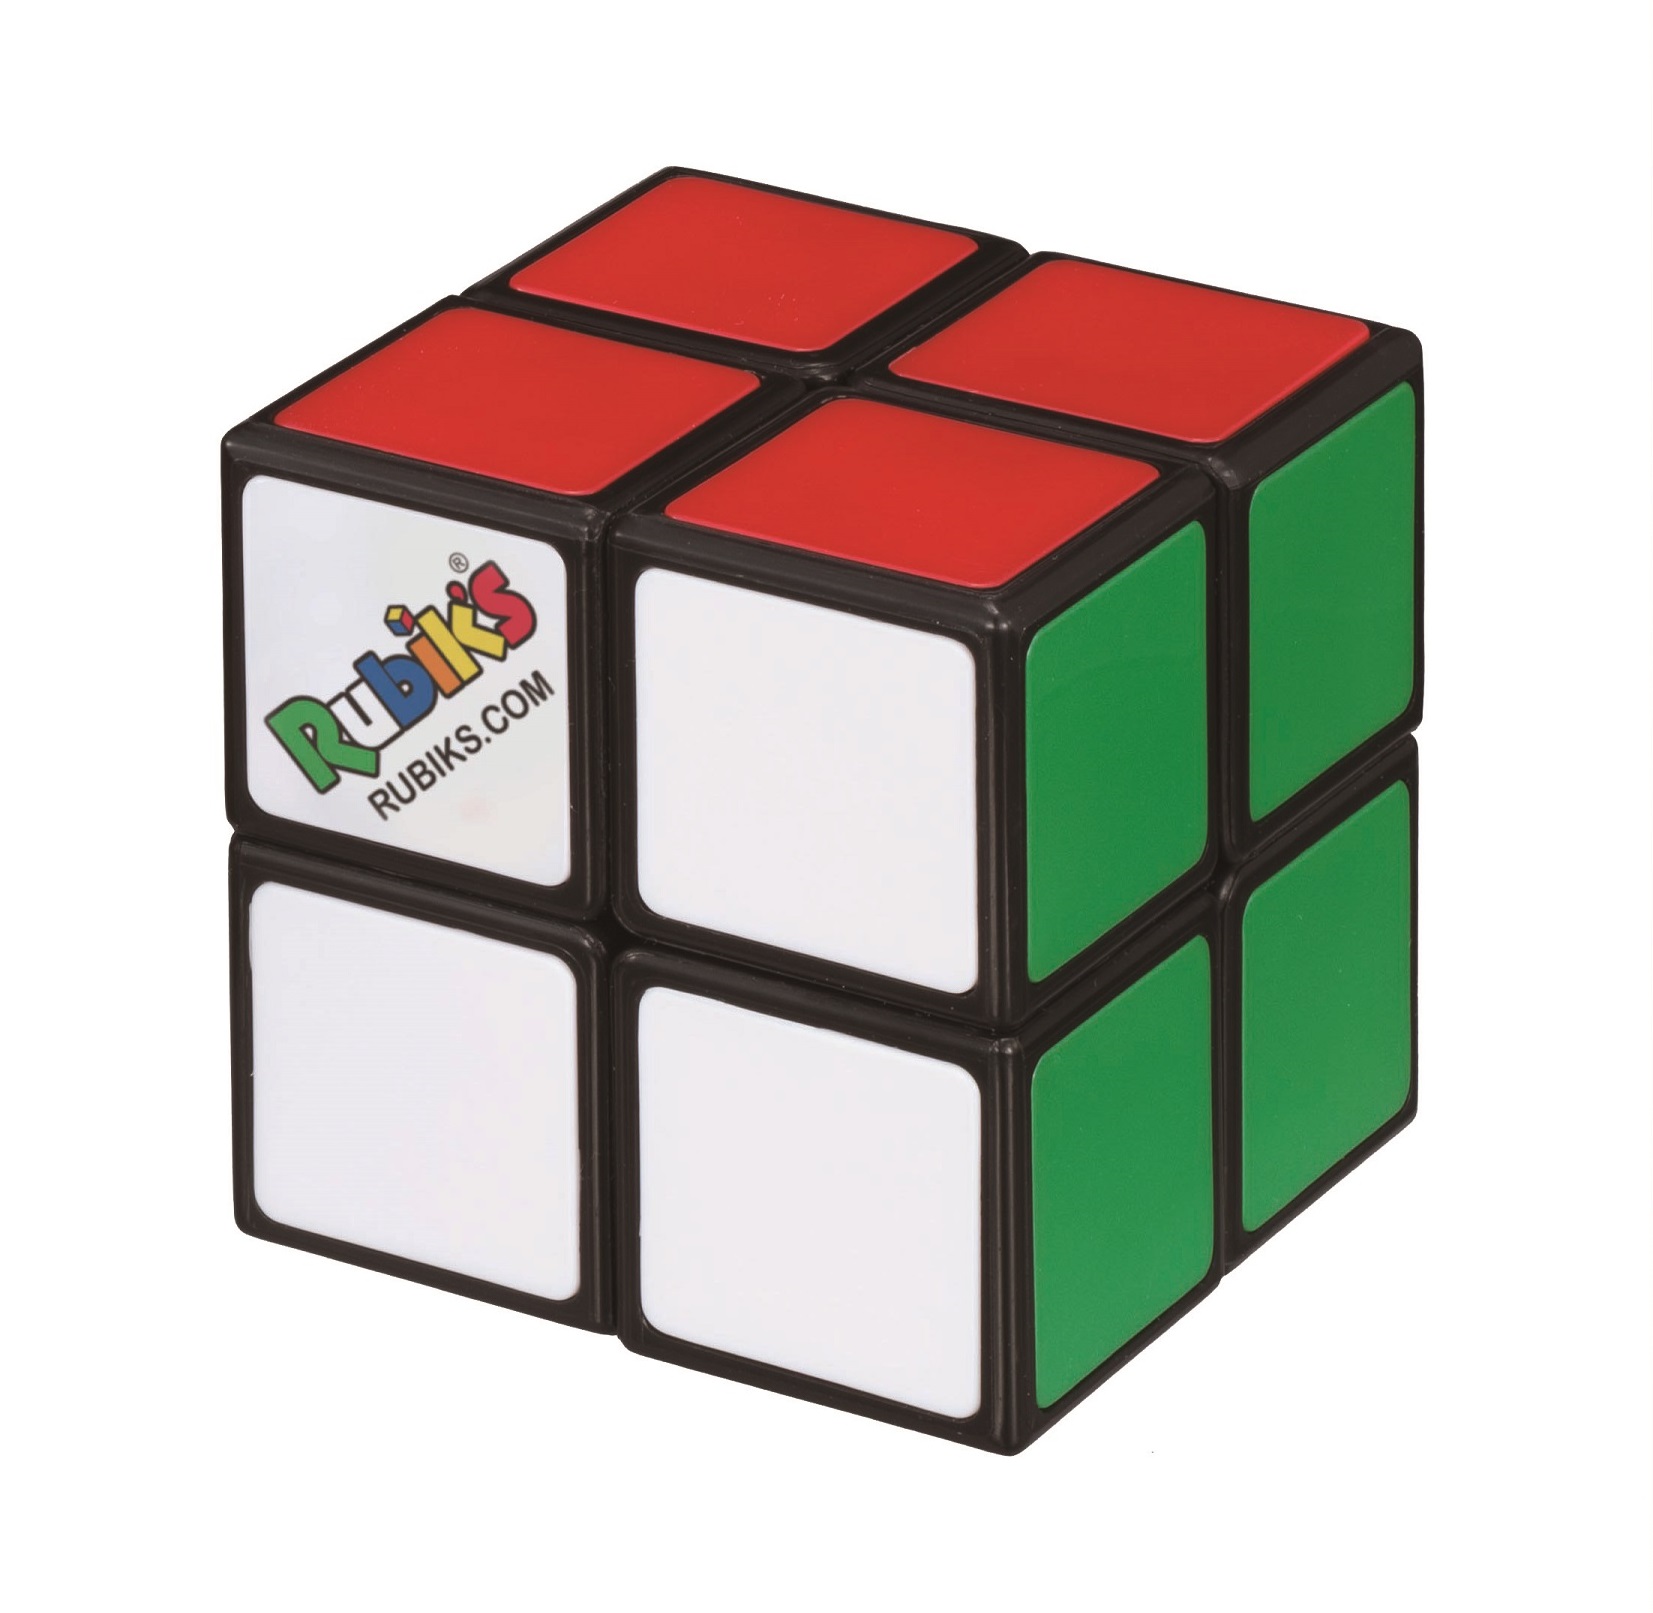 ルービックキューブ2×2 ver.2.1【公式ライセンス商品】 | MEGATREA SHOP